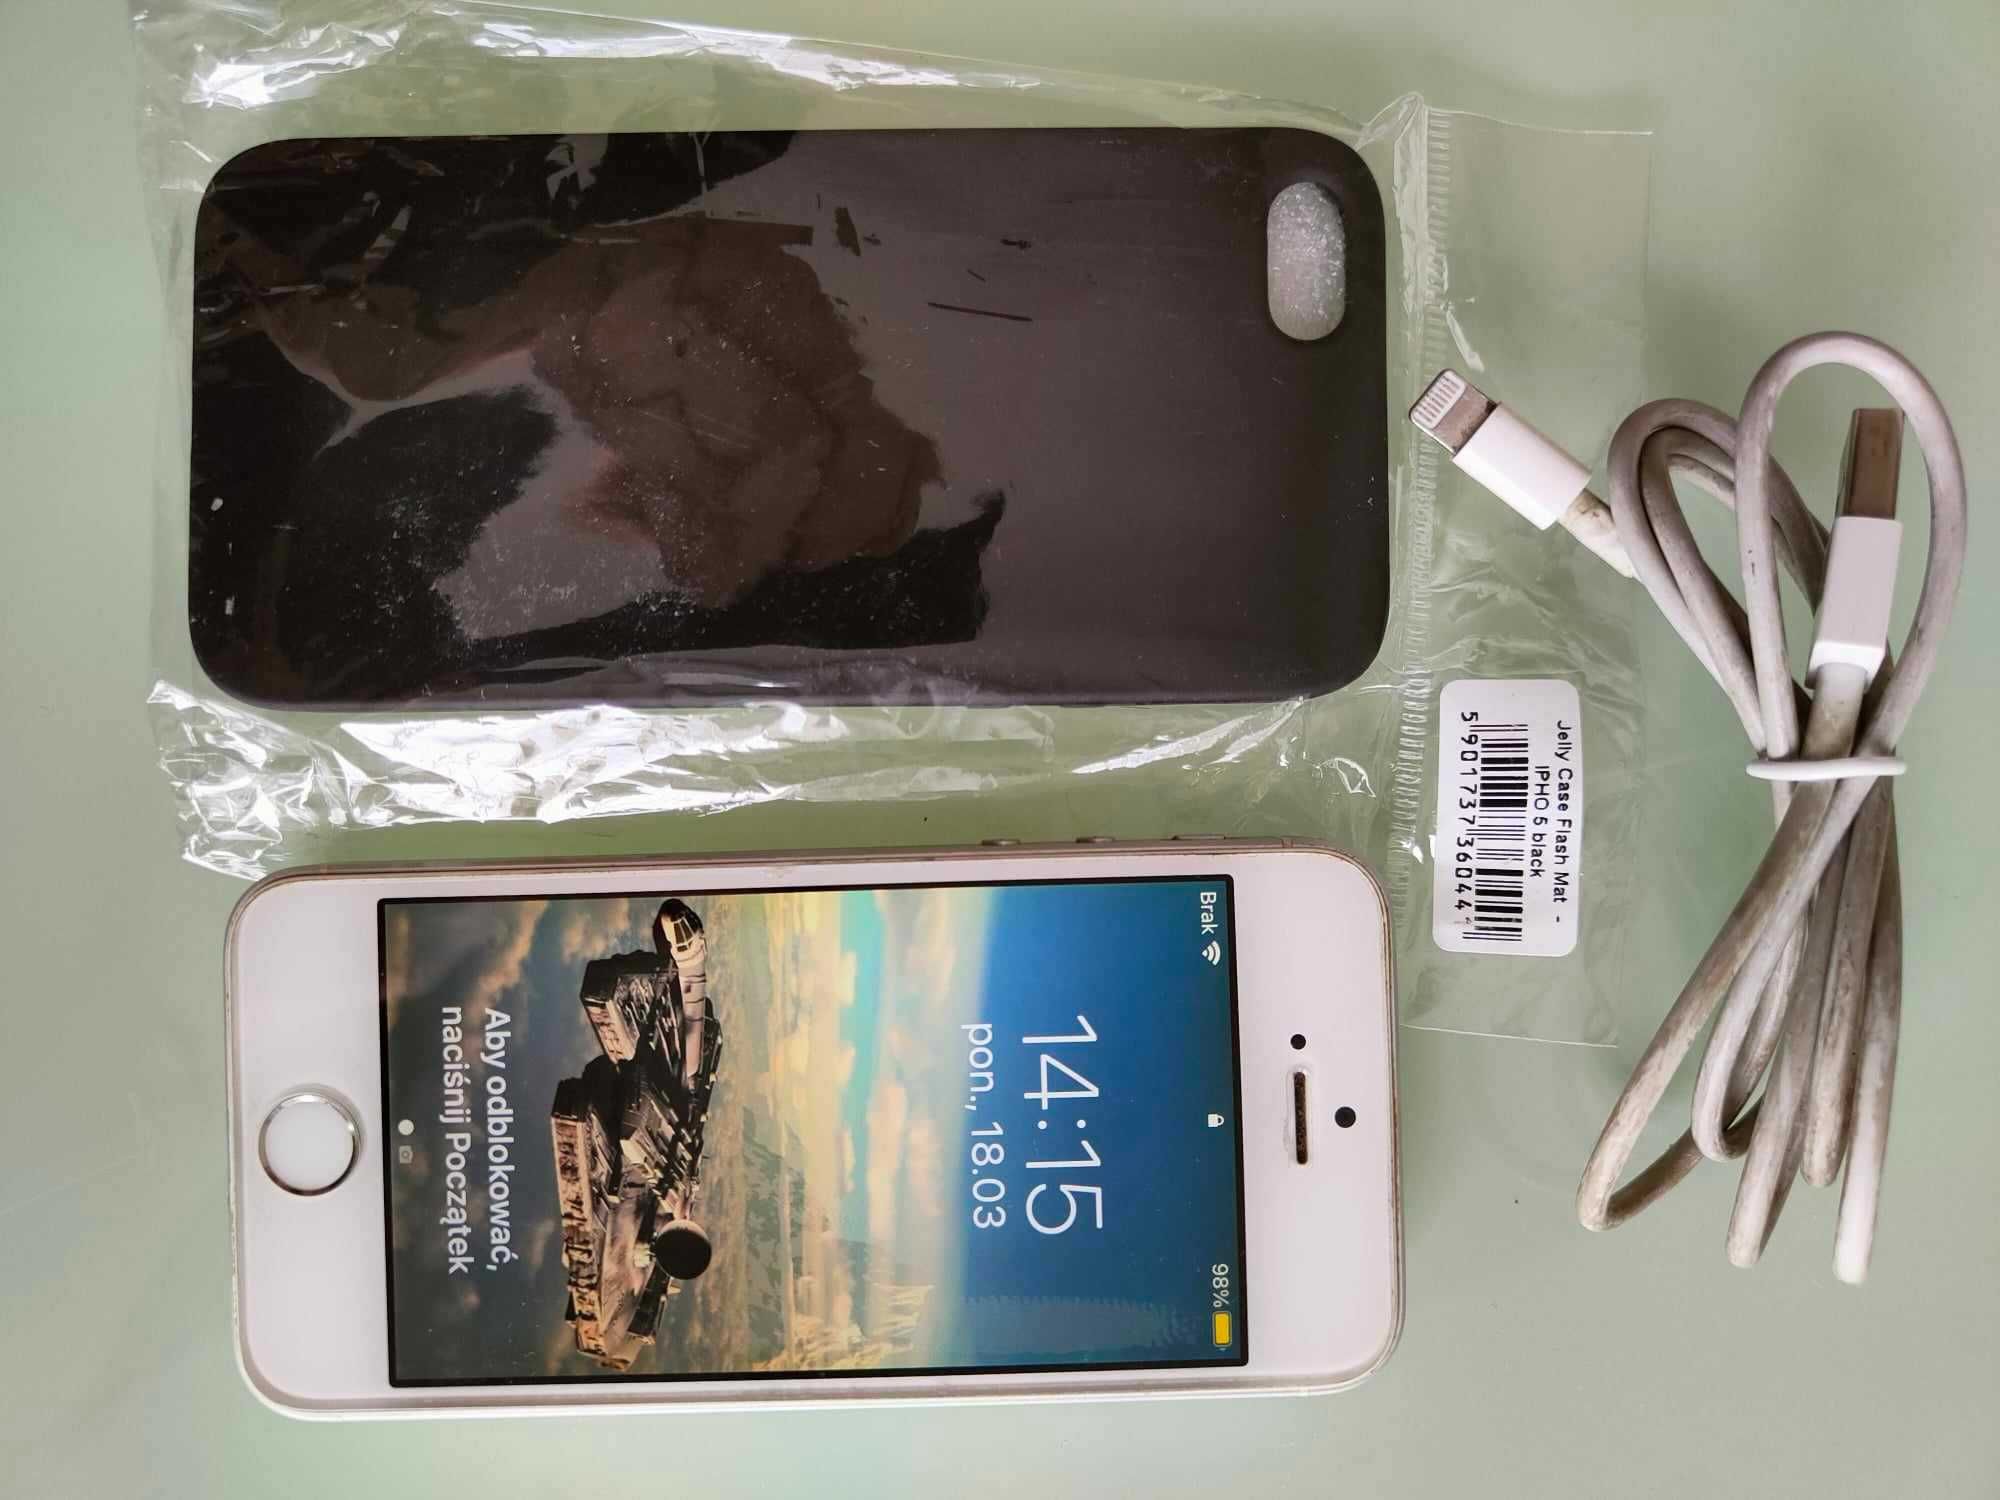 iPhone SE white 64 GB biały + kabel + nowe etui i słuchawki